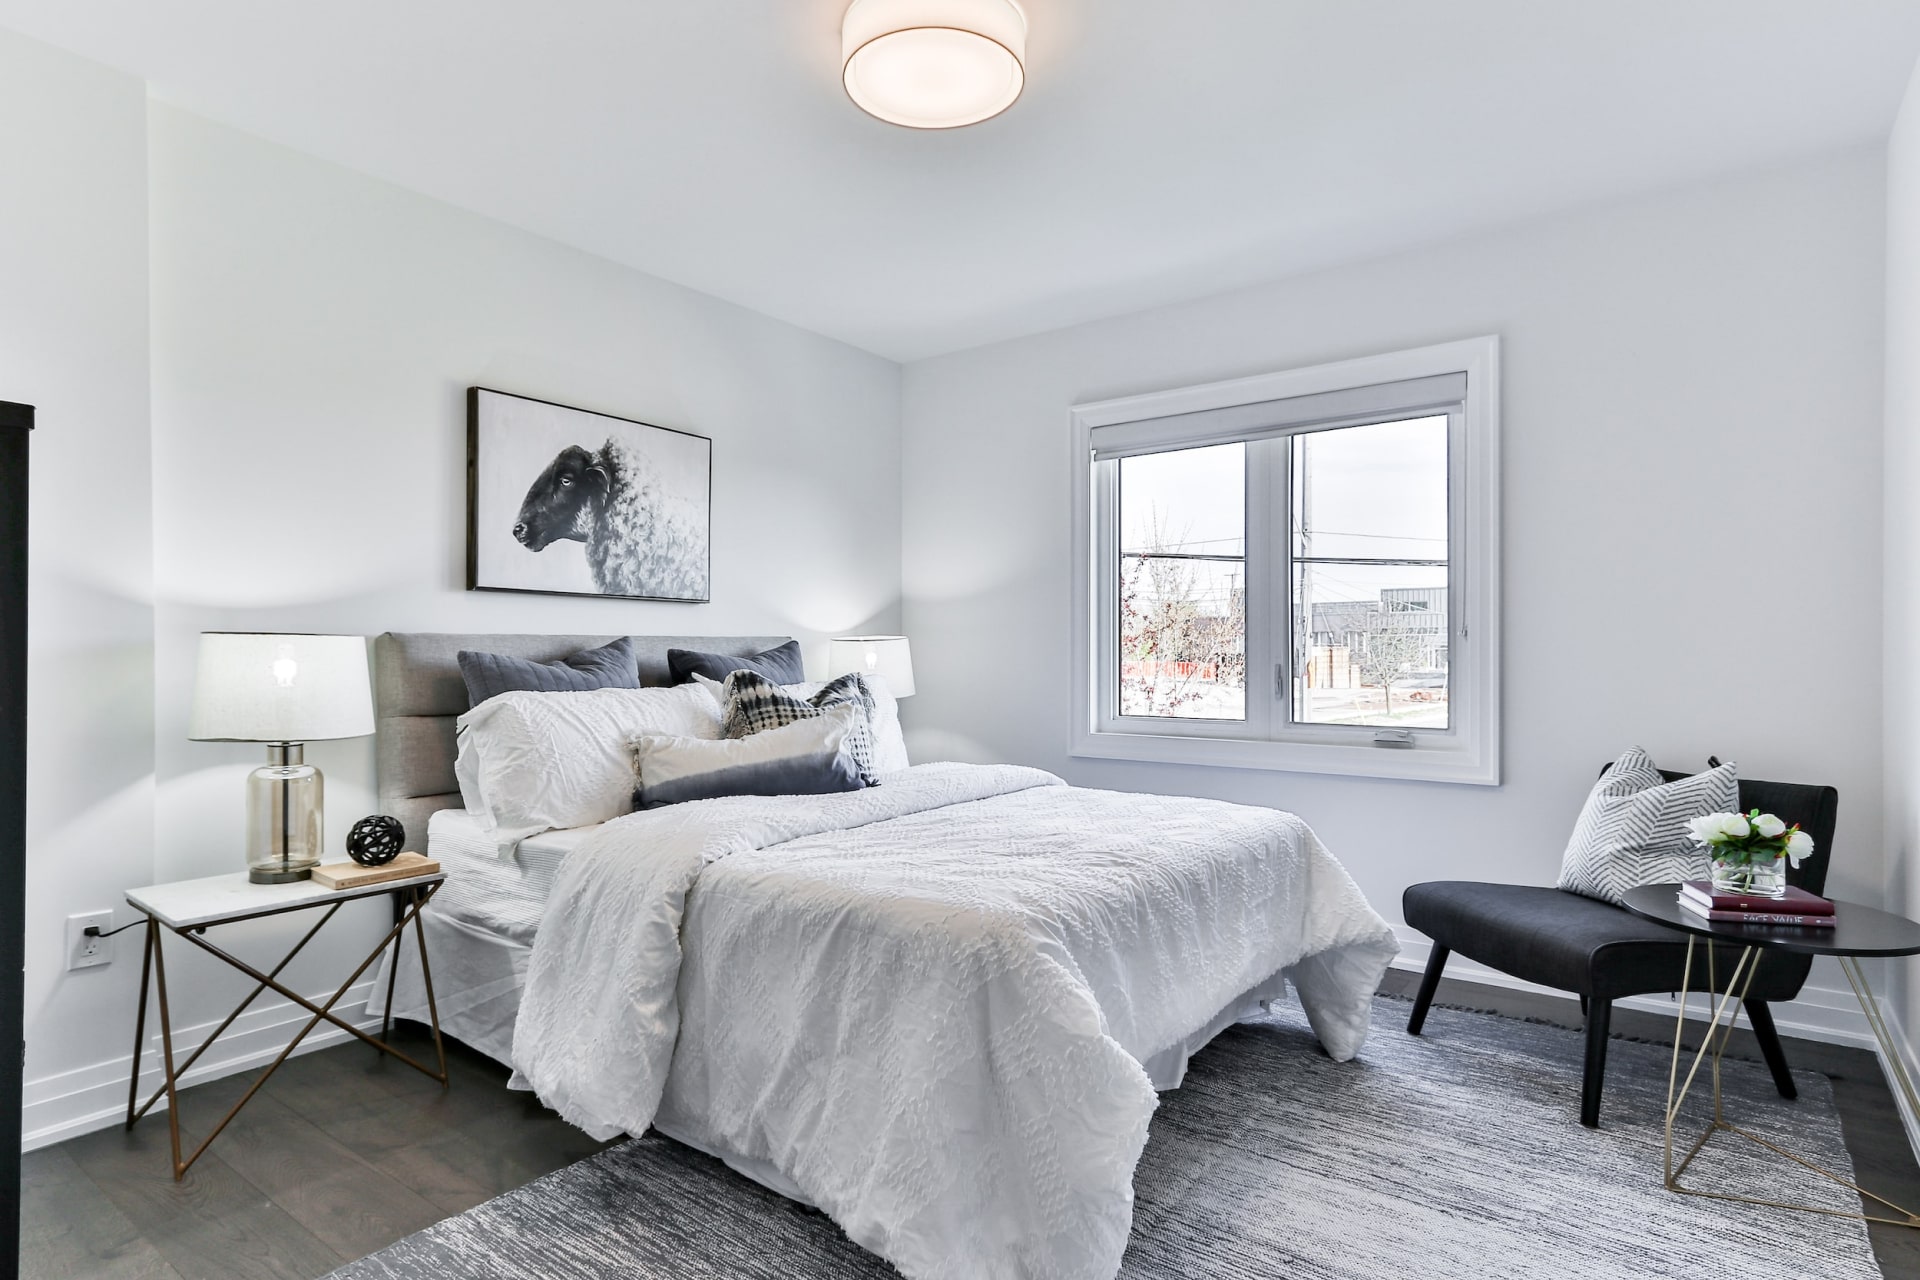 Imagen de un dormitorio moderno y minimalista.